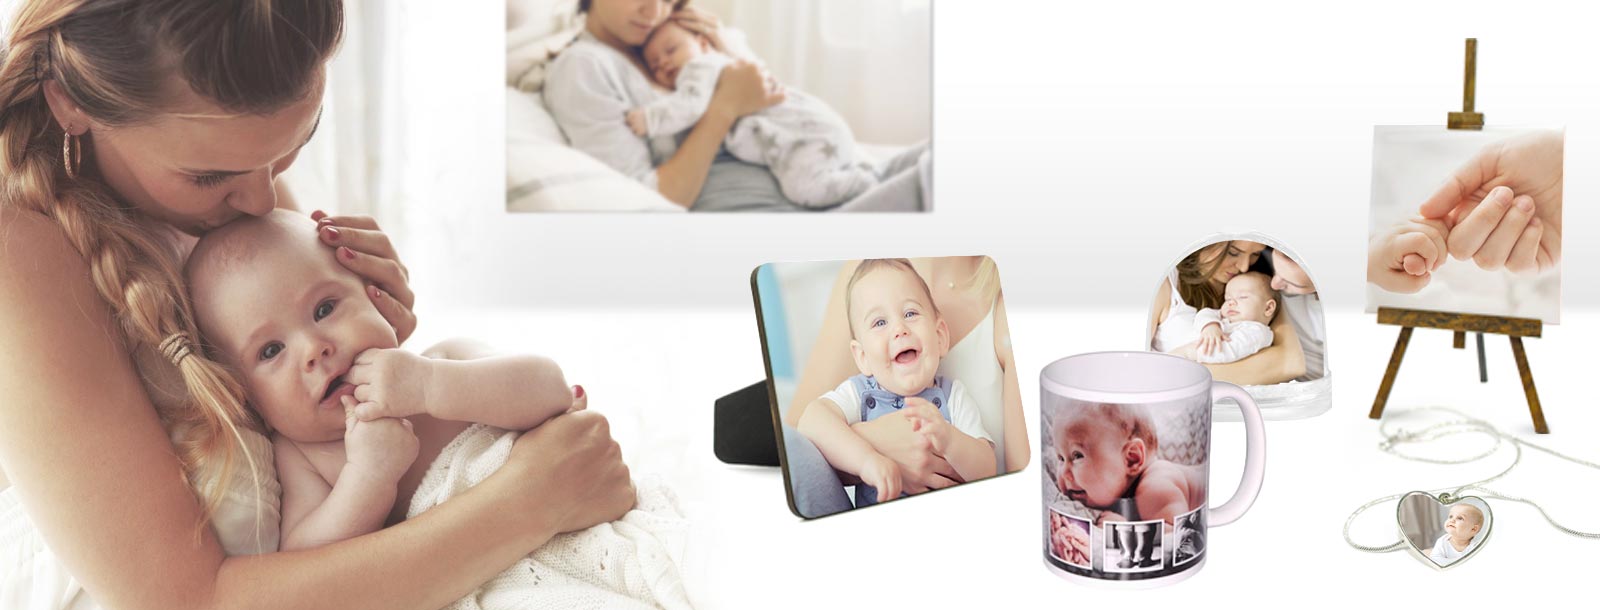 Regali personalizzati per neonati. Scegli le foto più belle per realizzare regali speciali per mamma e papà